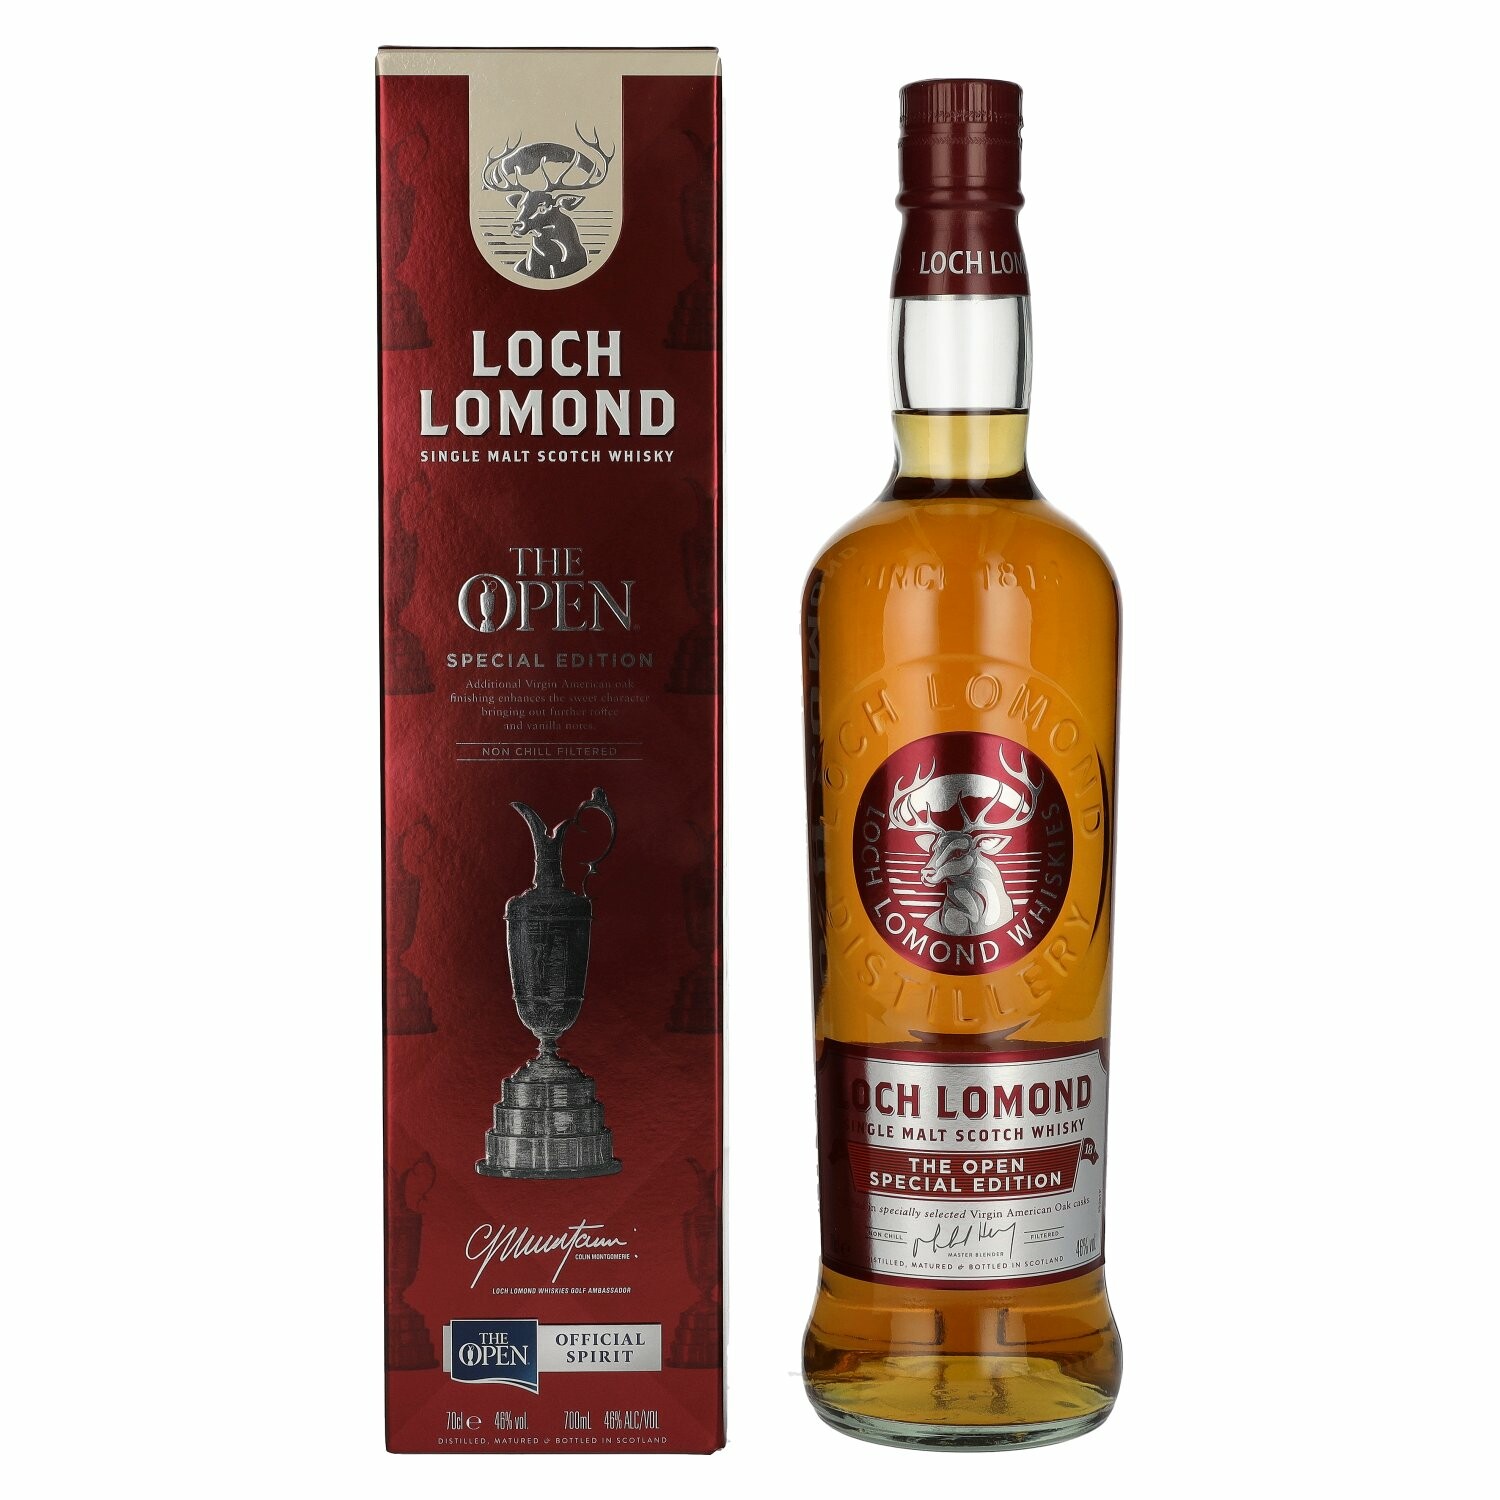 Loch Lomond THE OPEN Single Malt Special Edition 46% Vol. 0,7l in Giftbox